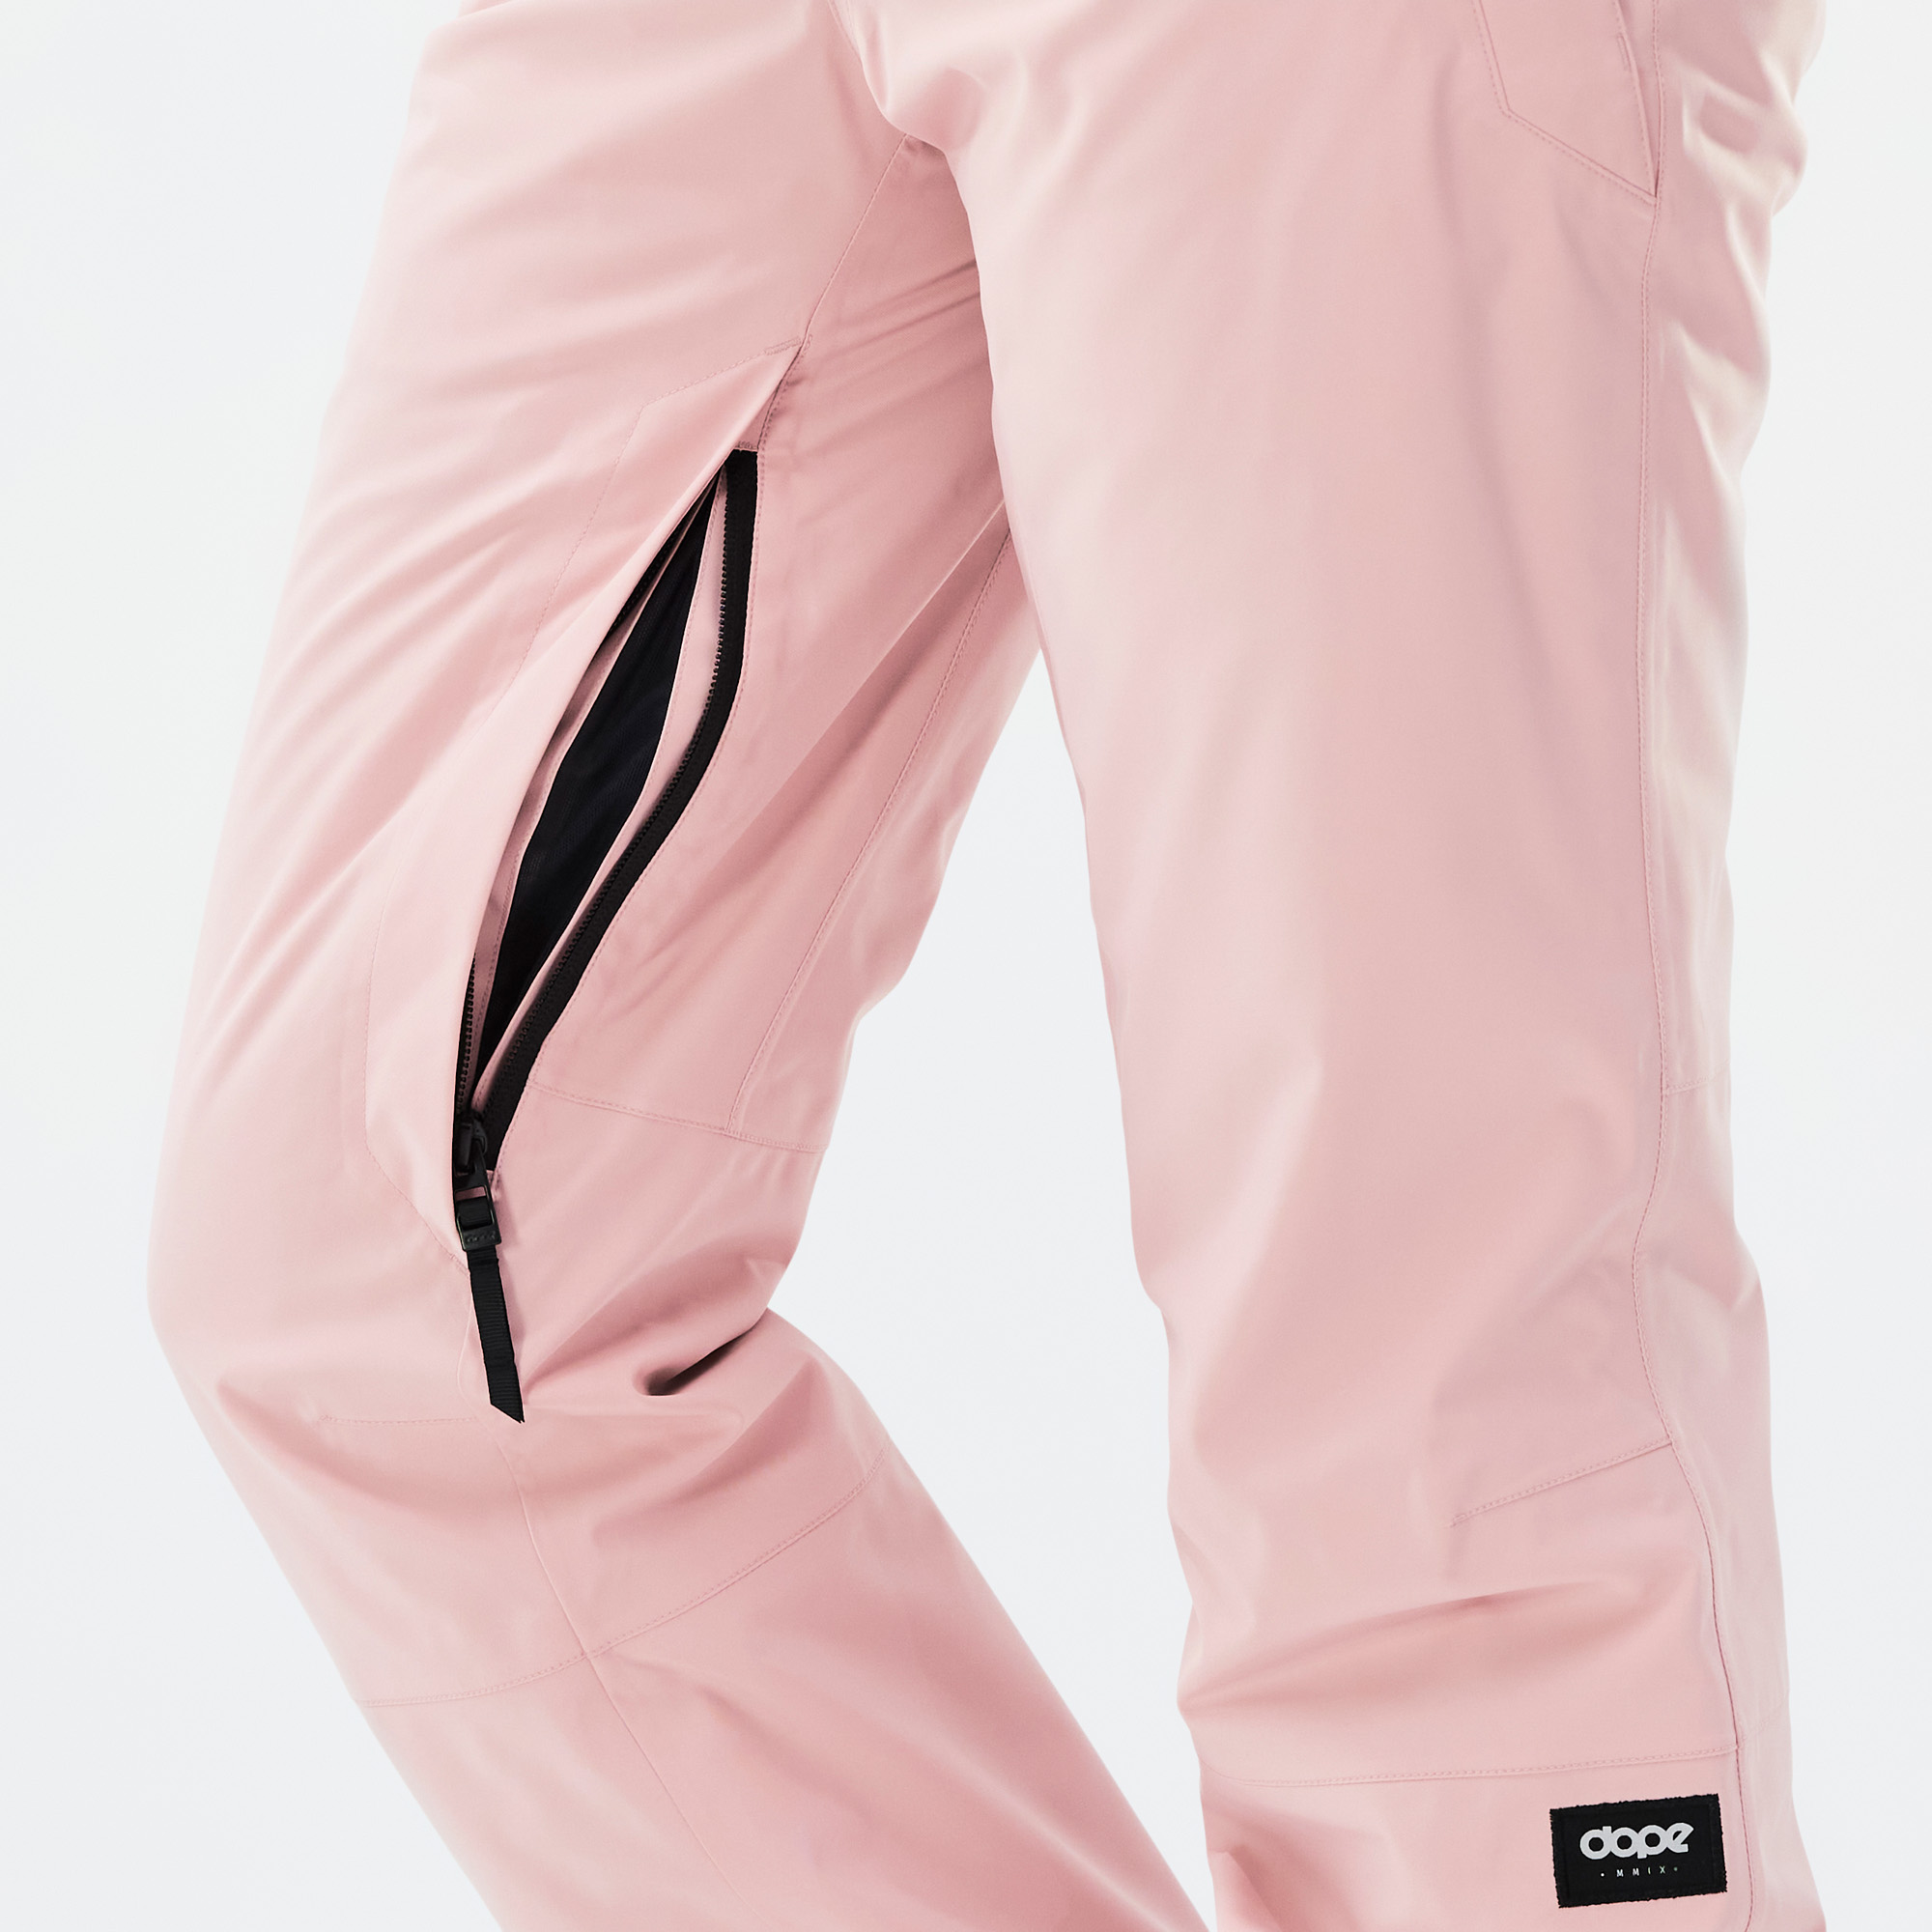 Dope Con W Ski Pants Women Soft Pink